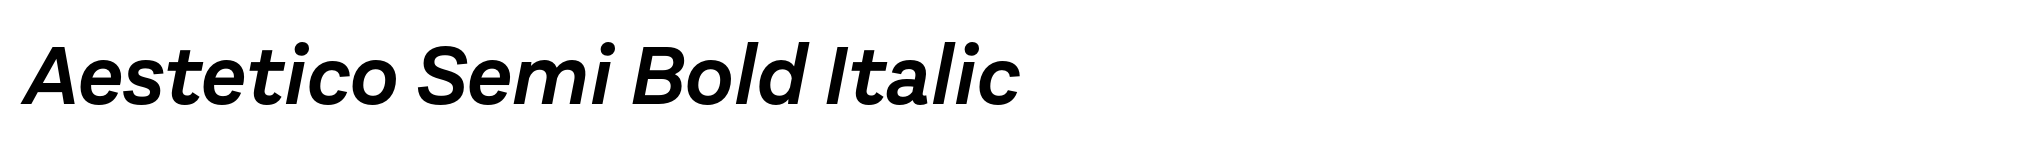 Aestetico Semi Bold Italic image